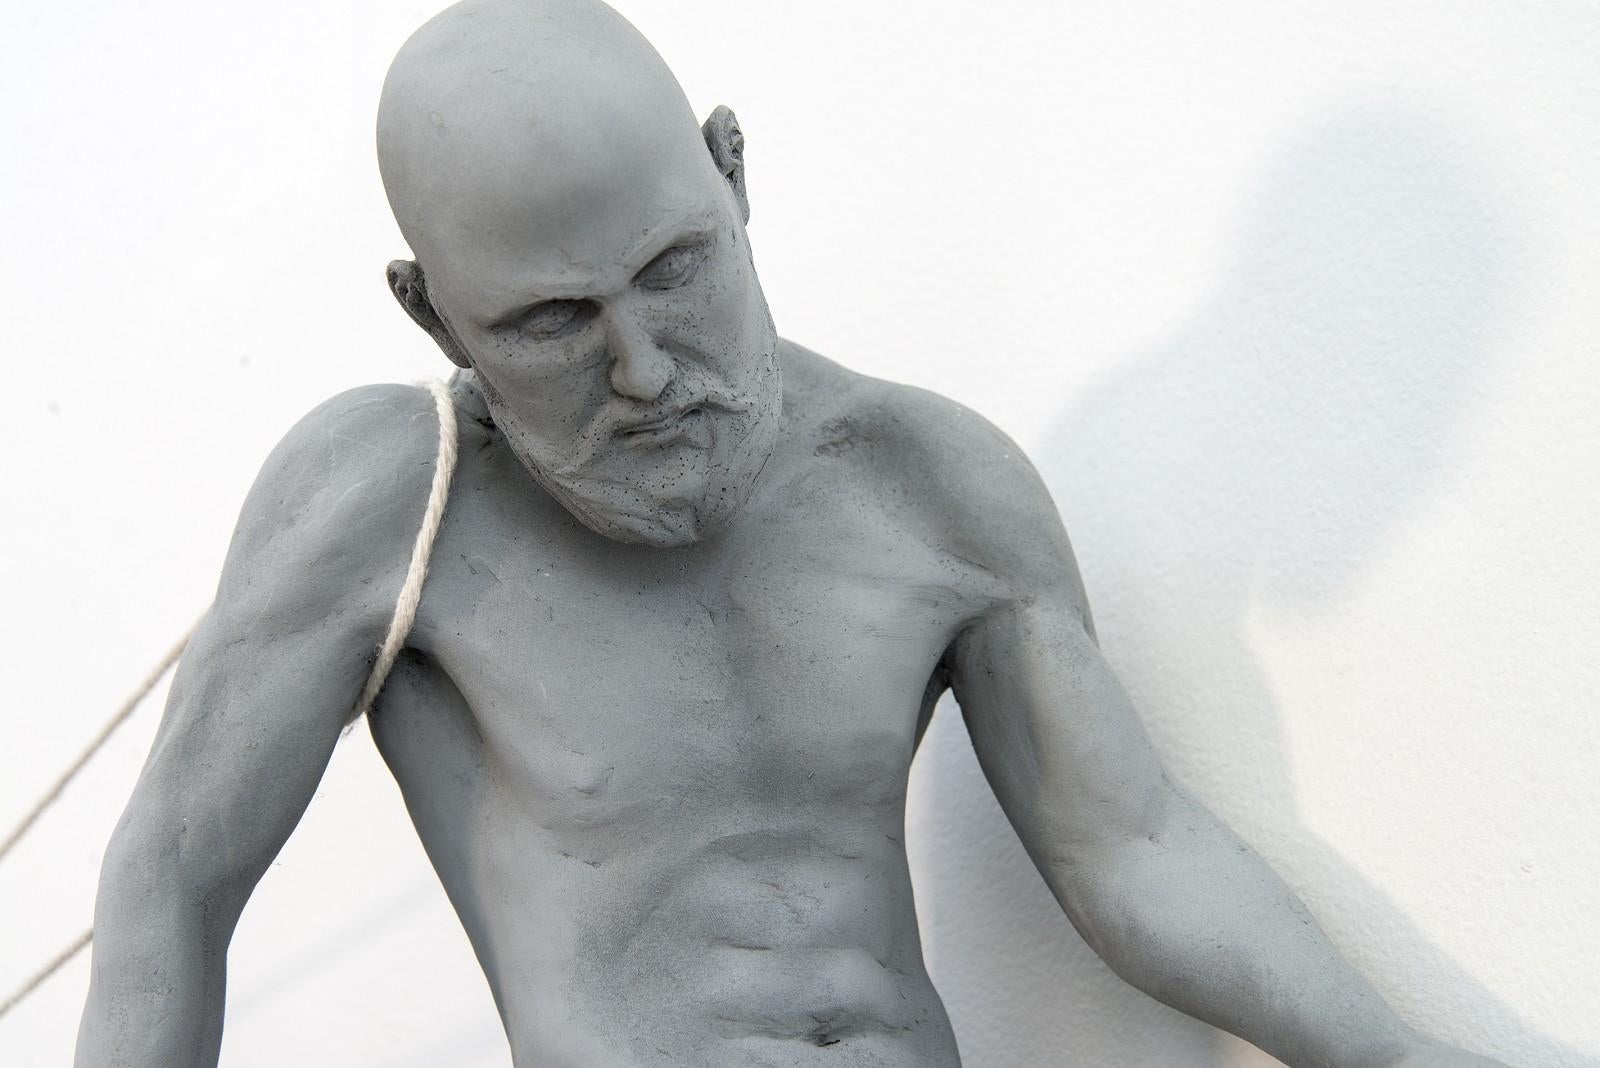 Le sculpteur canadien WW Hung a choisi une autre pose poignante et puissante pour explorer la condition humaine dans cette œuvre contemporaine en matériaux mixtes.

Un homme nu est assis sur le bord d'une planche à bascule de type enfantin, attachée